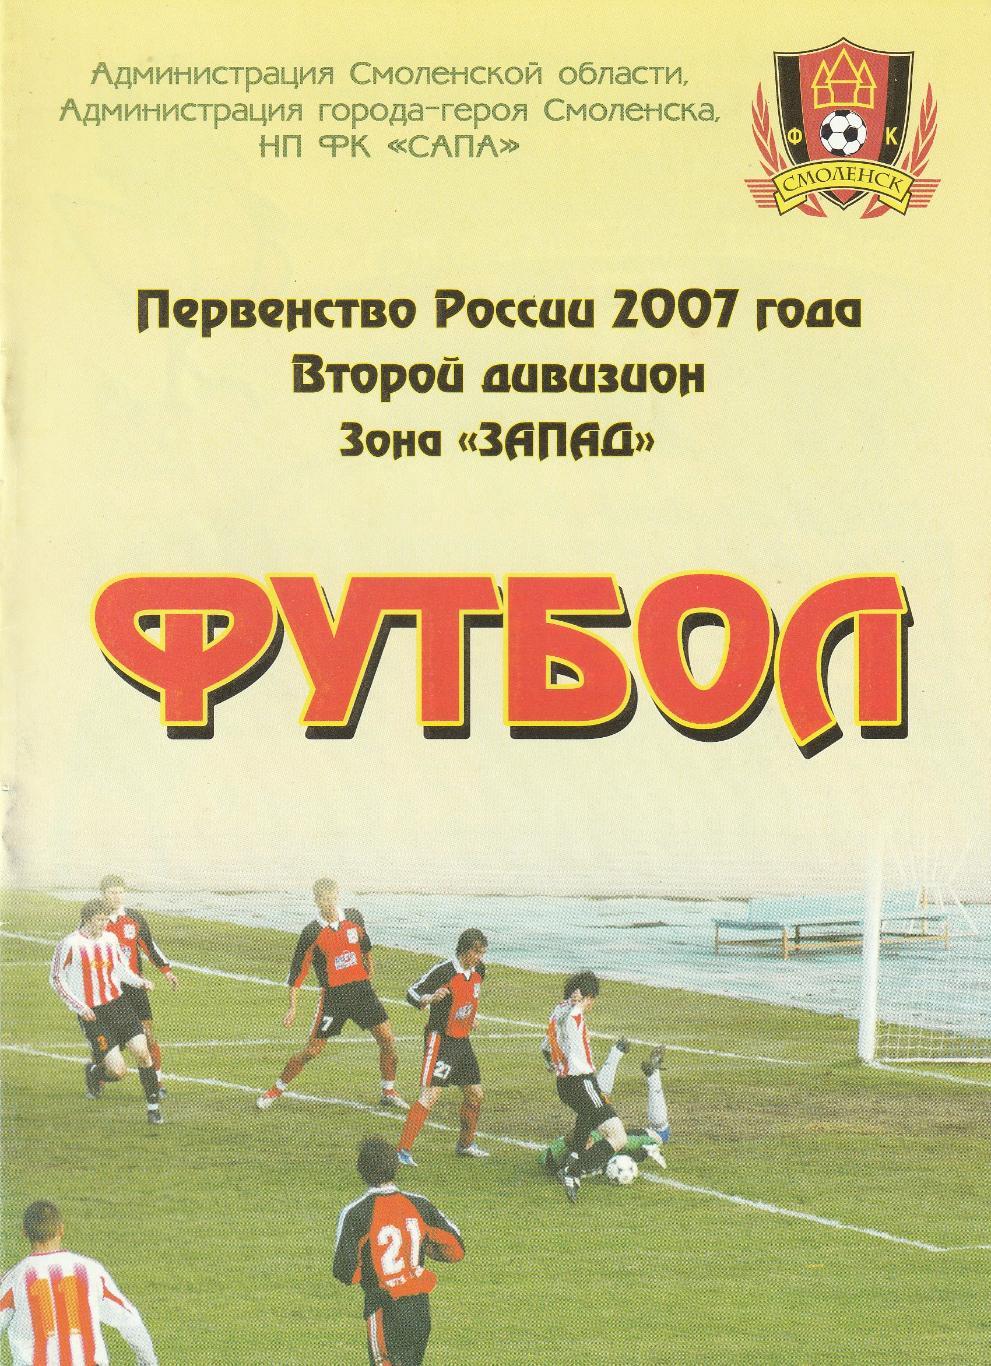 ФК Смоленск - Спартак Щелково 09.08.2007